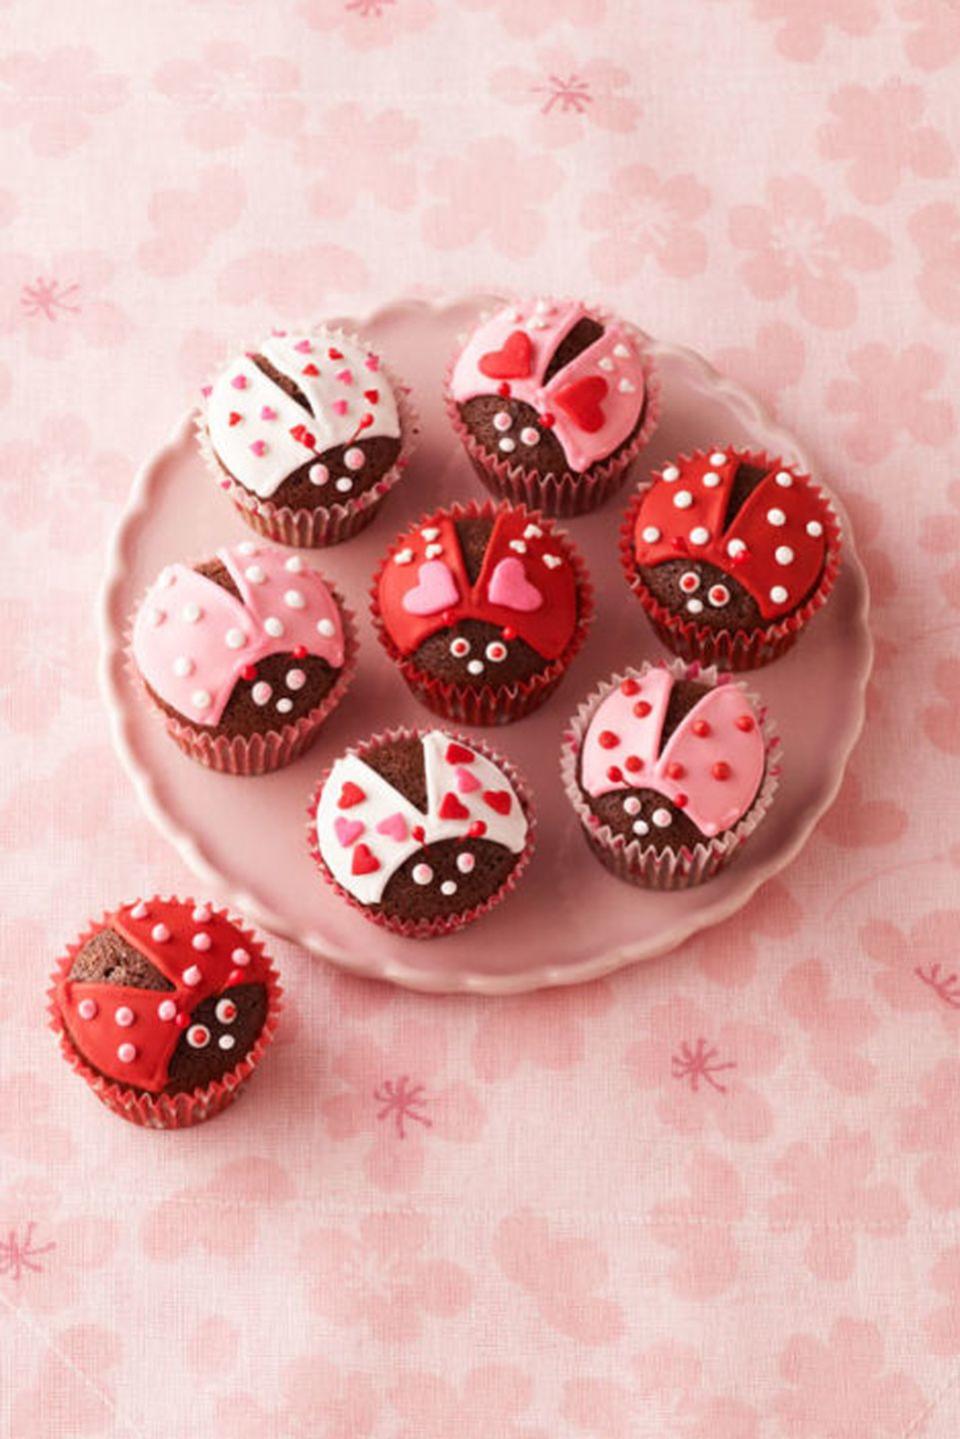 Chocolate Lovebug Cupcakes